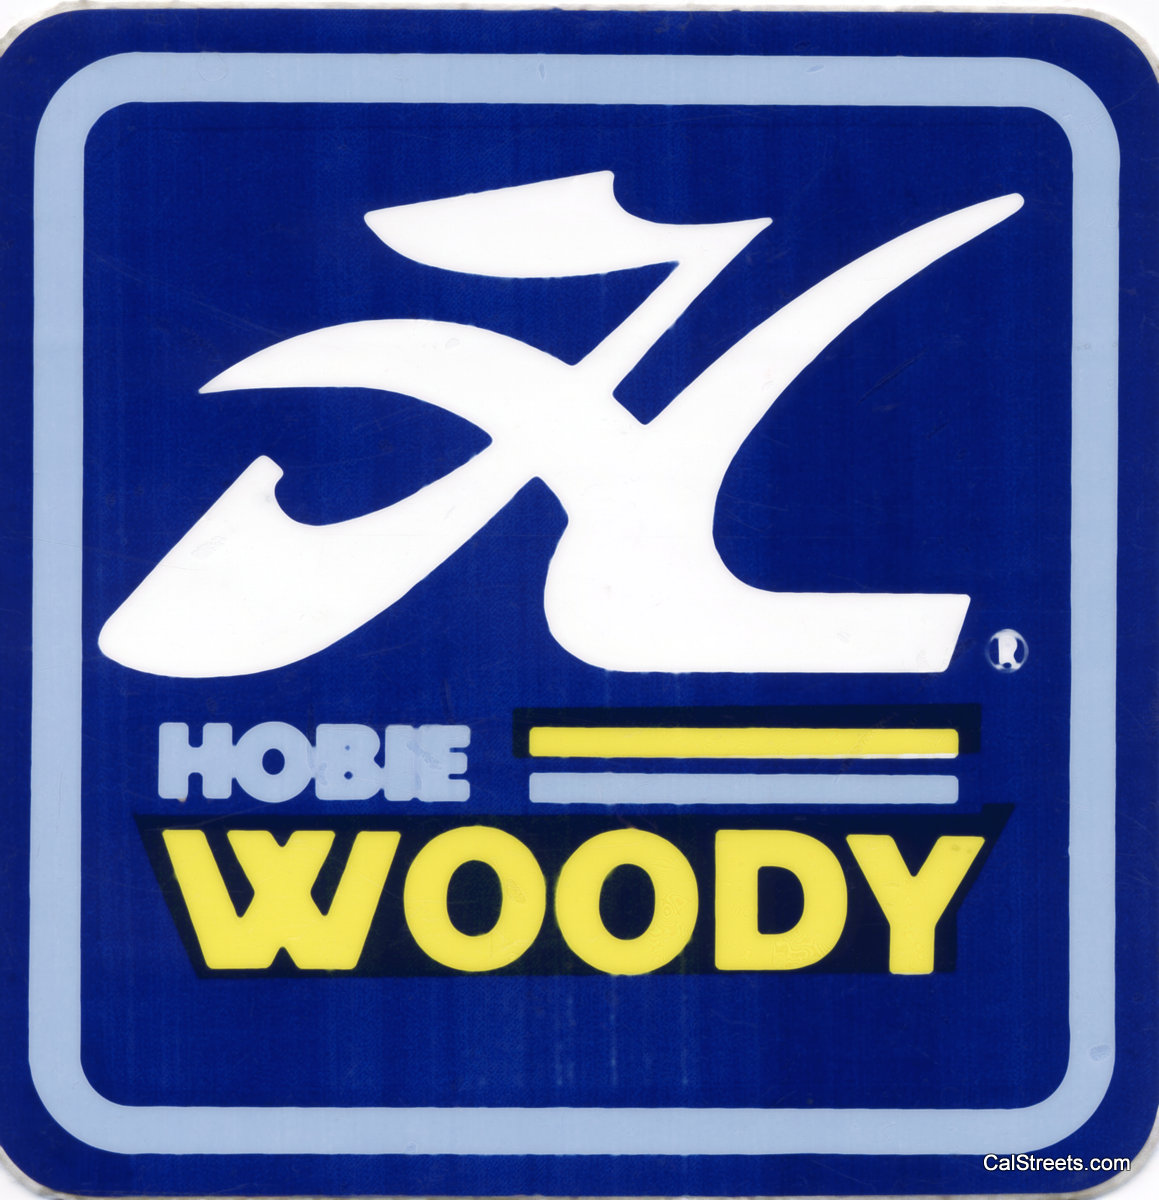 Hobie-Woody.jpg